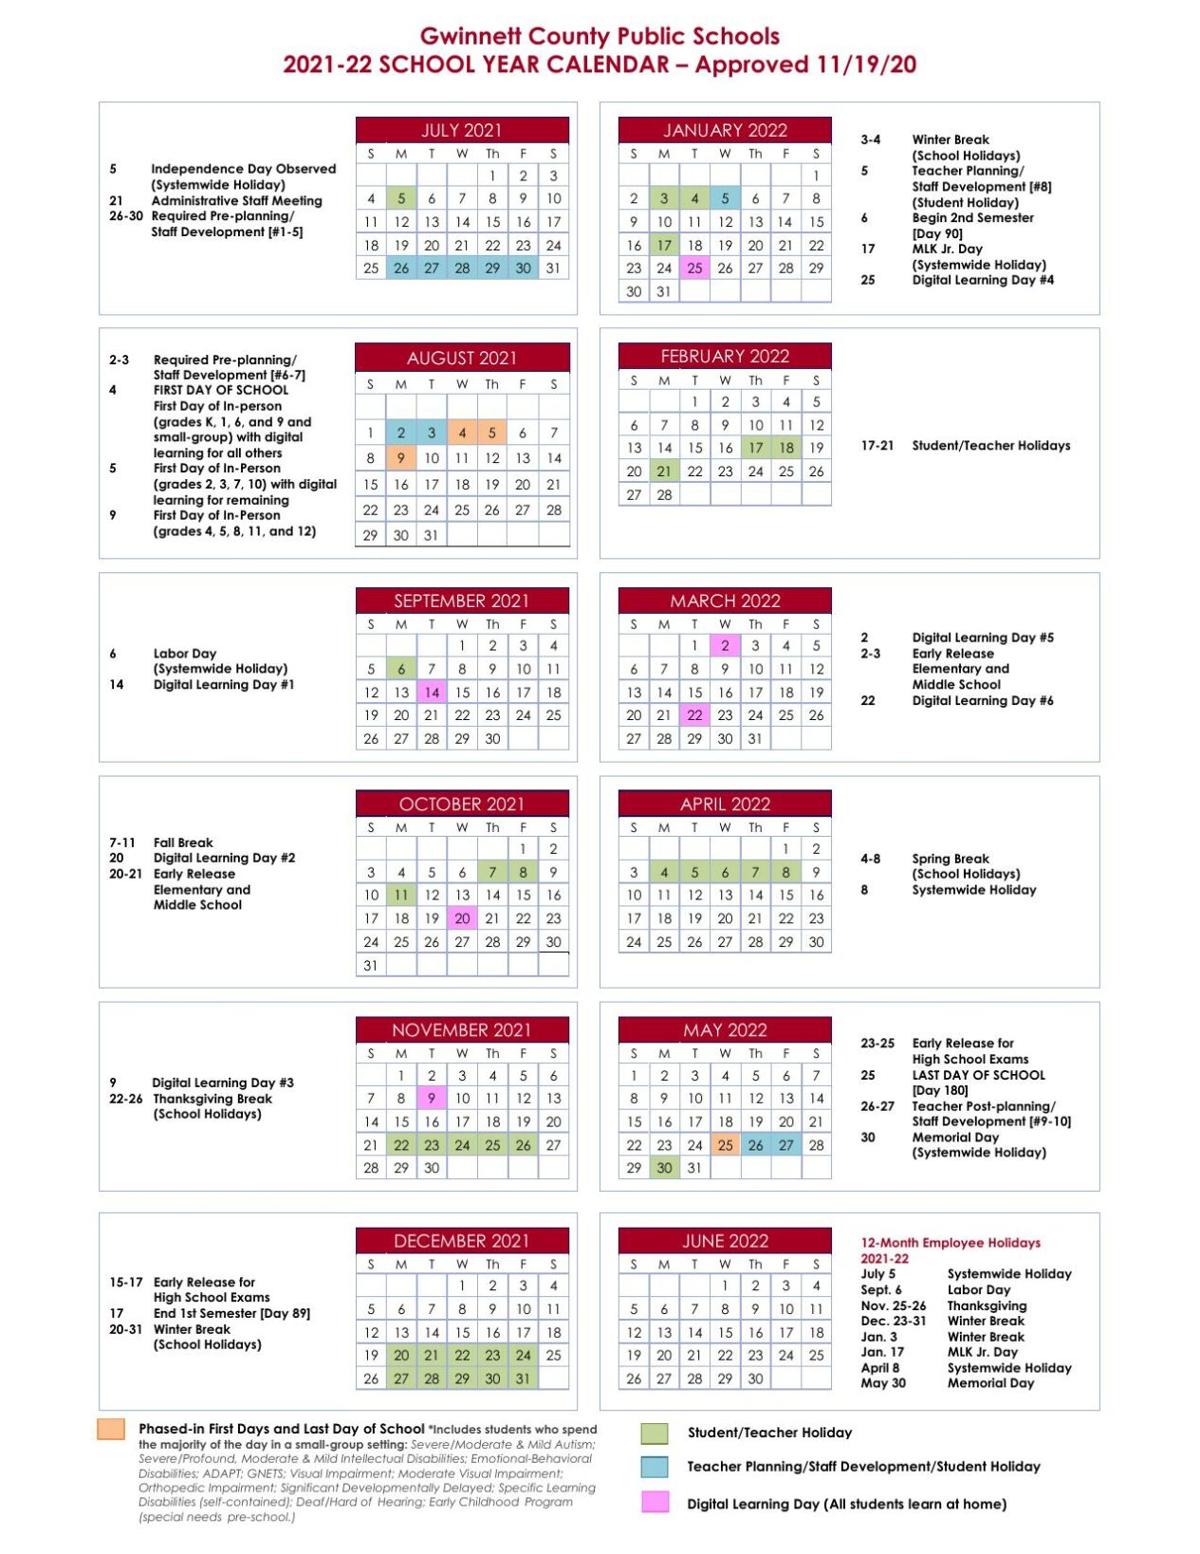 Hawaii Doe Calendar 2022 2023 Gwinnett County Public Schools' 2021-2022 School Year Calendar | |  Gwinnettdailypost.com